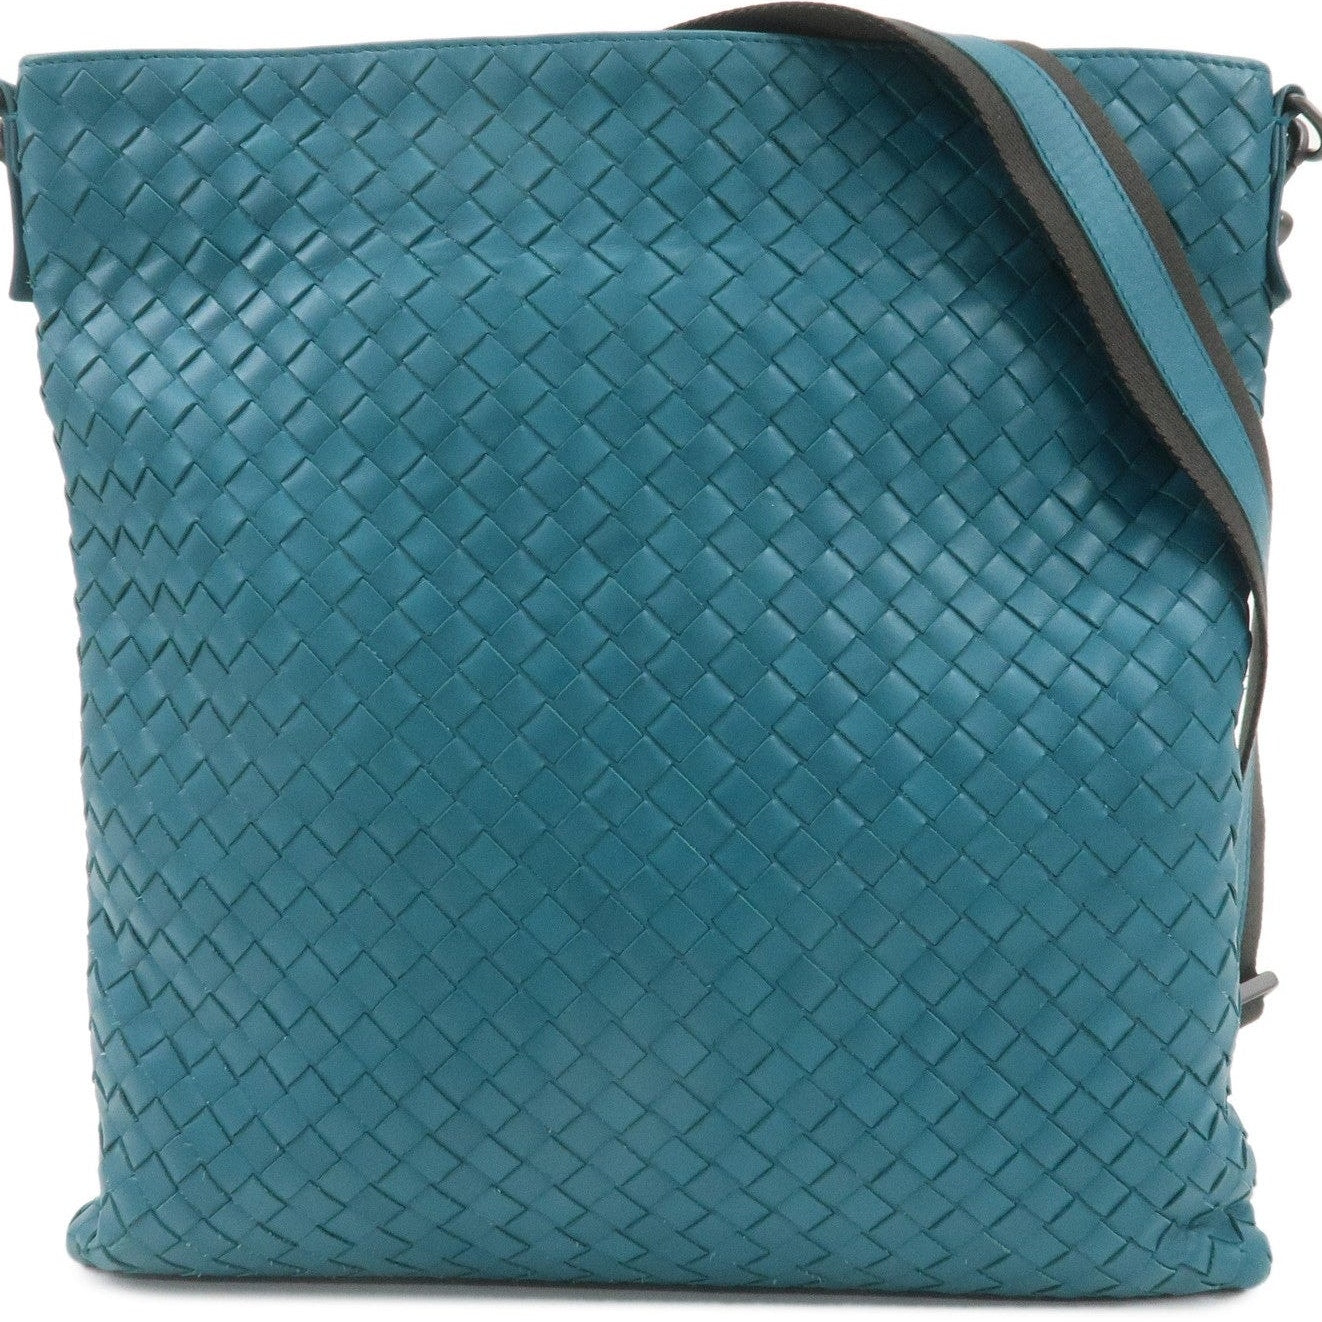 Authentic BOTTEGA VENETA Intrecciato Leather Shoulder Bag Turquoise